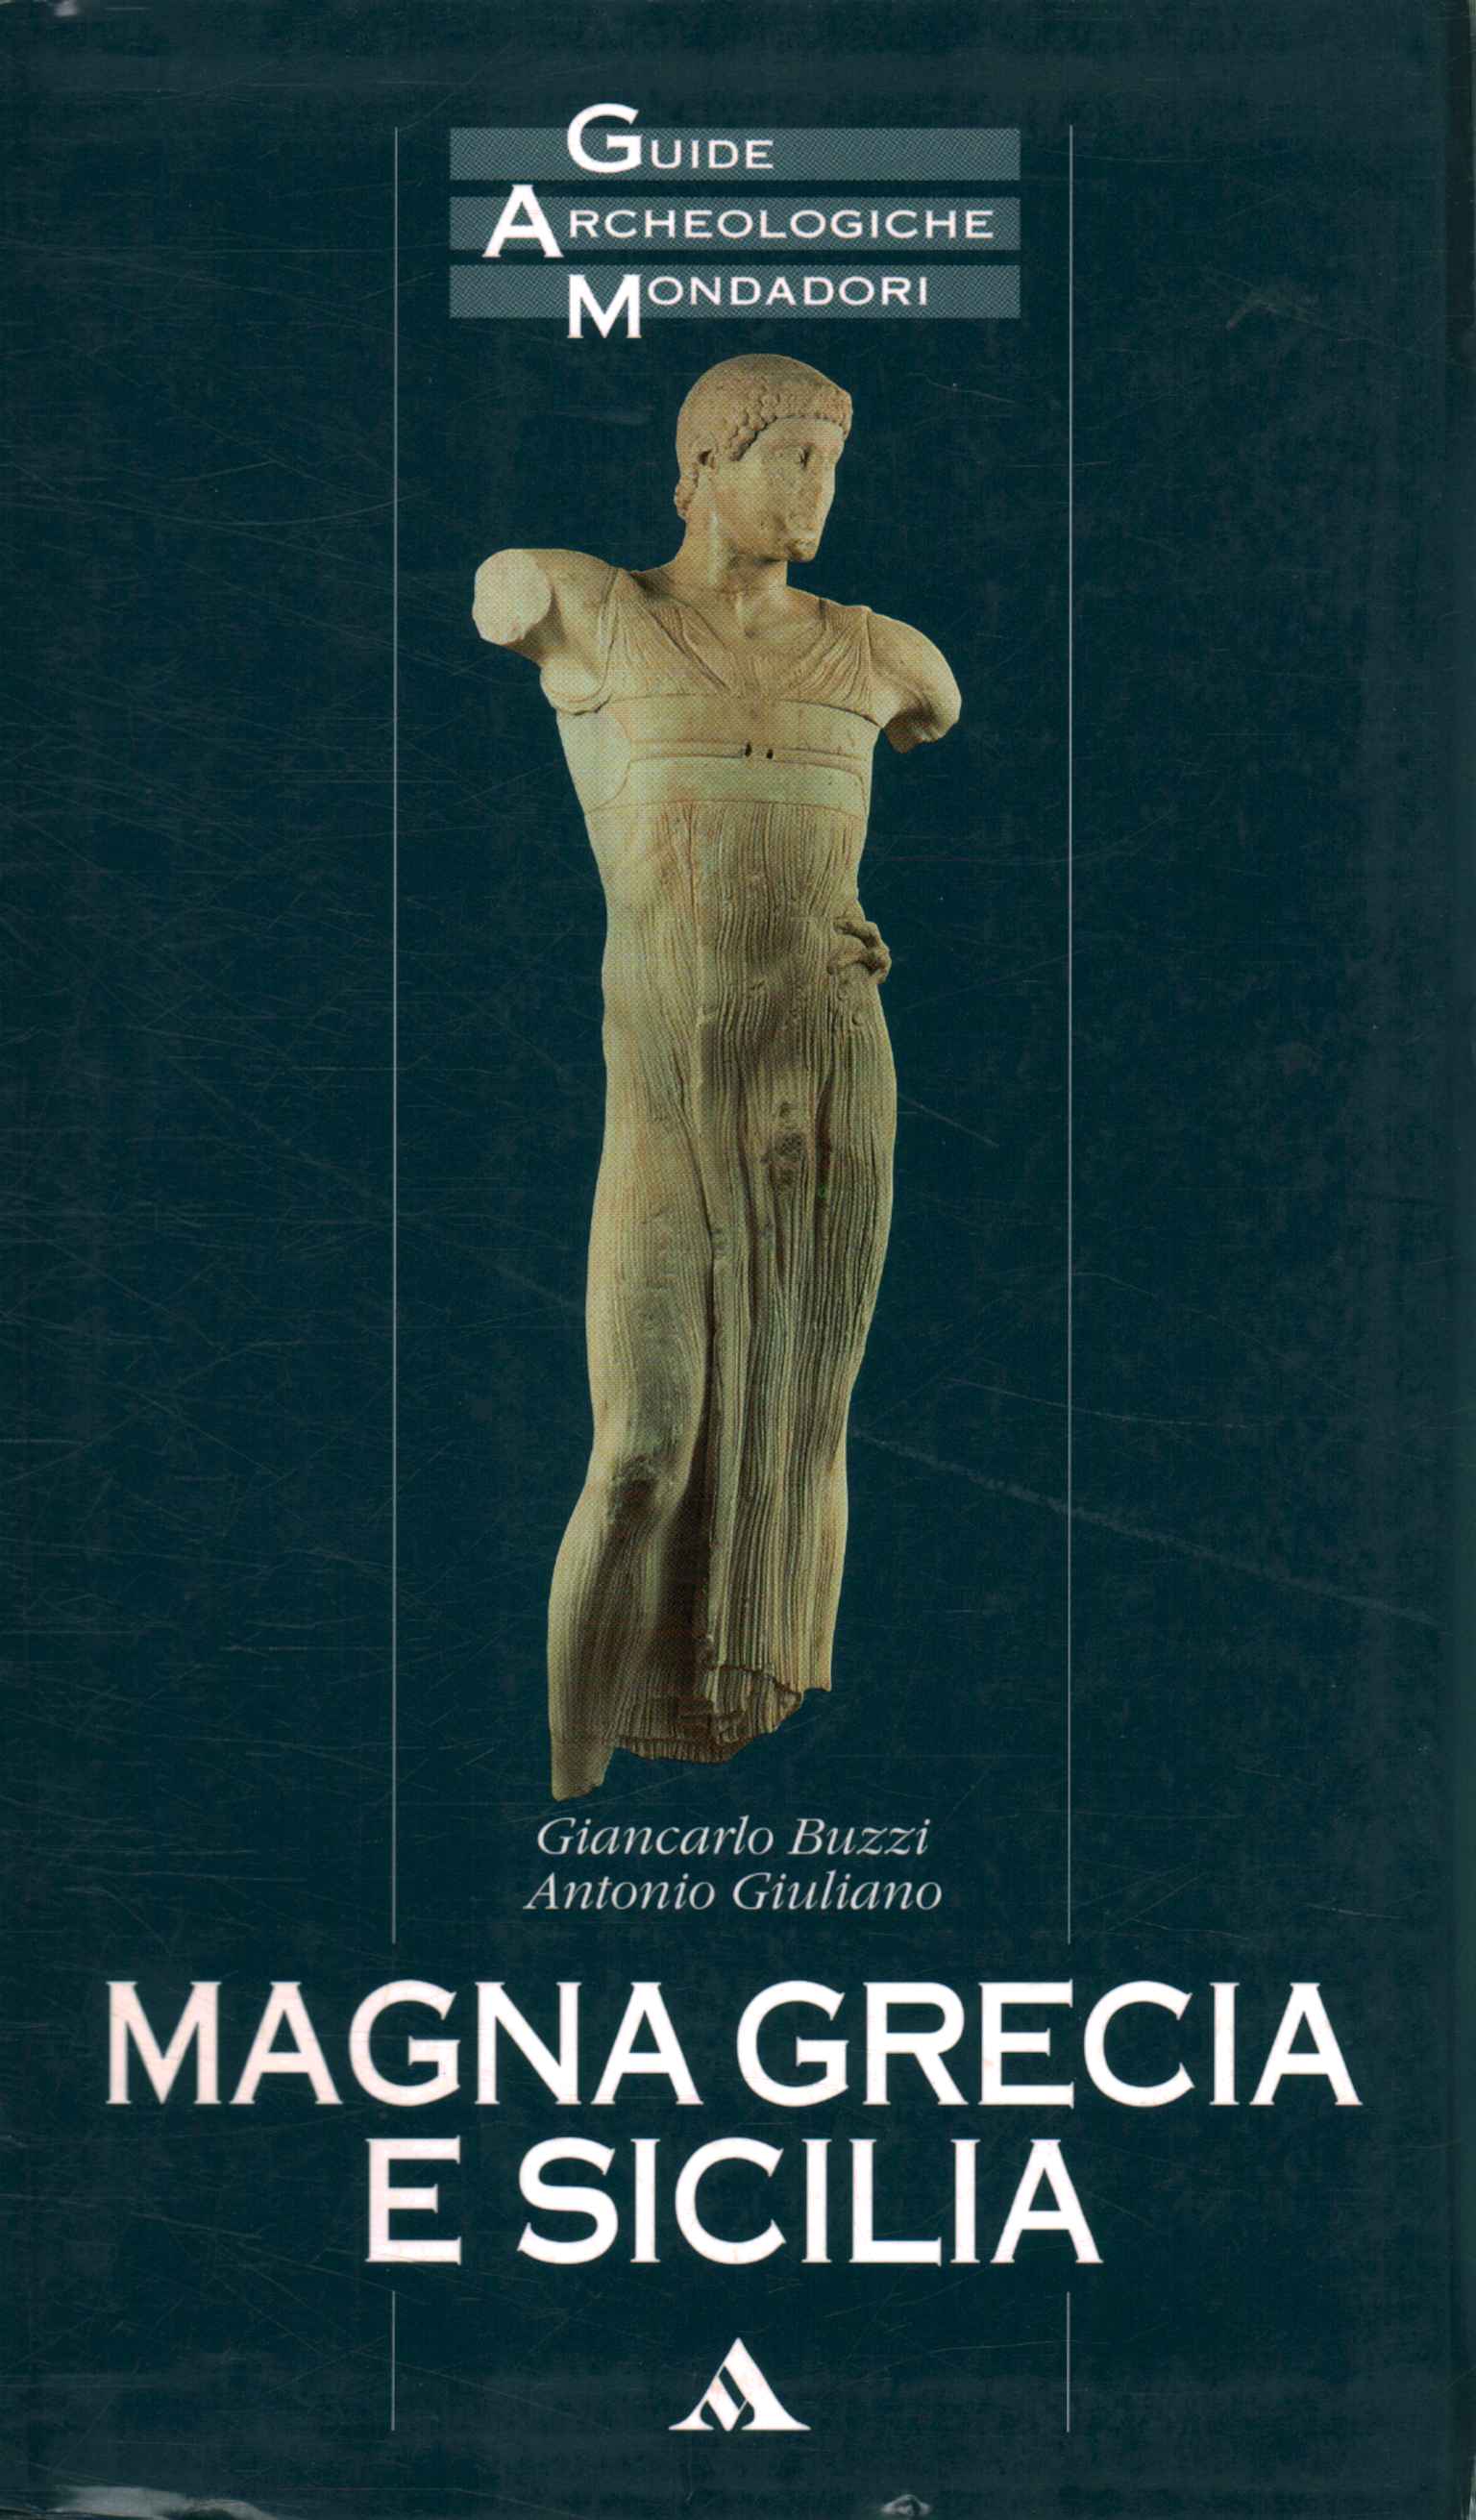 Guida Grecia Antica con Storia e Ricostruzioni dei Monumenti